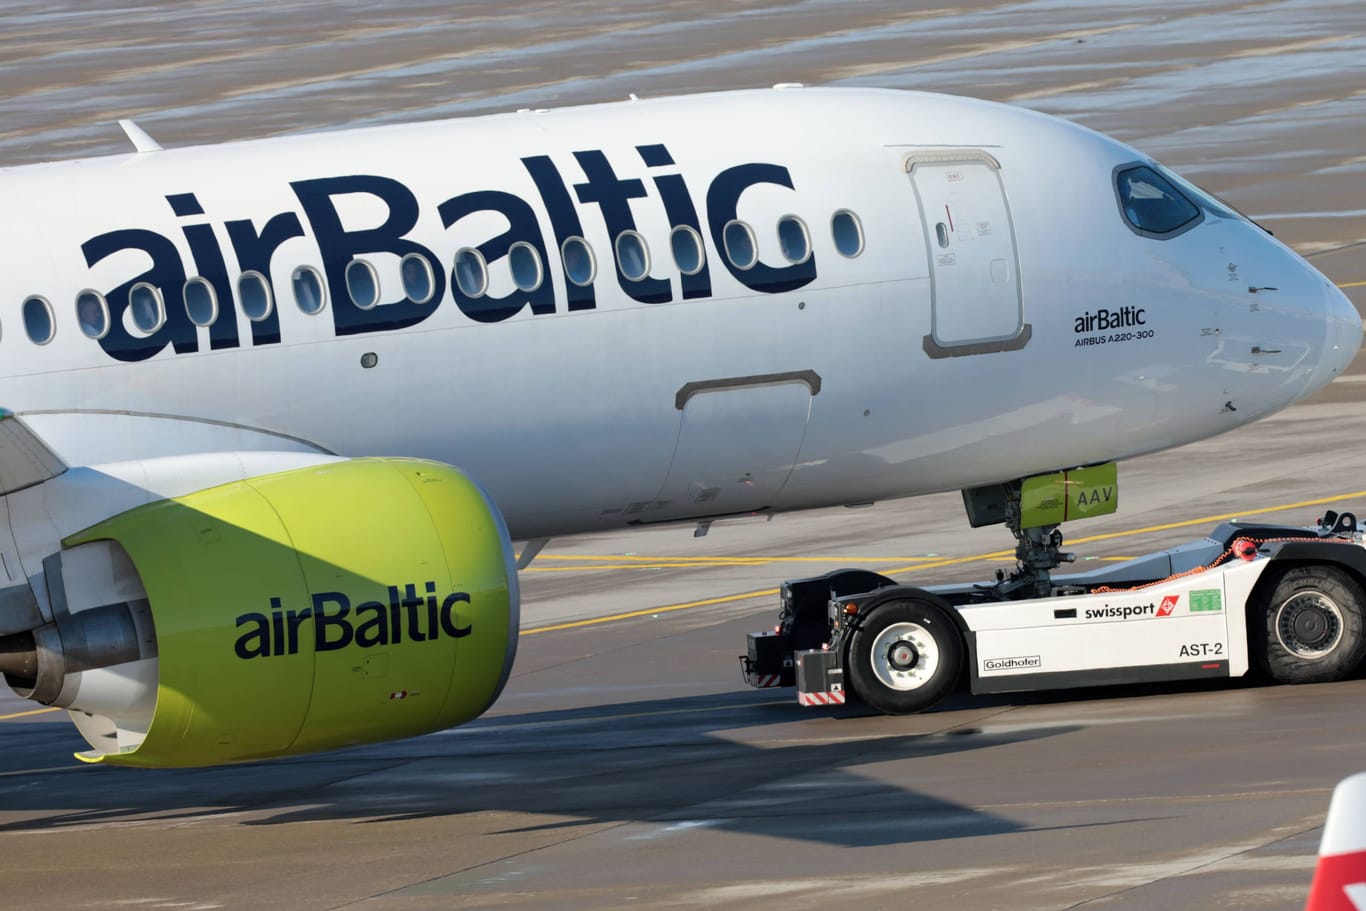 Eine Air Baltic Maschine auf dem Flugfeld (Archivbild): Nach einem Nuklearalarm wurden in Barcelone 127 Menschen kurzzeitig in einer Maschine von Air Baltic eingesperrt.